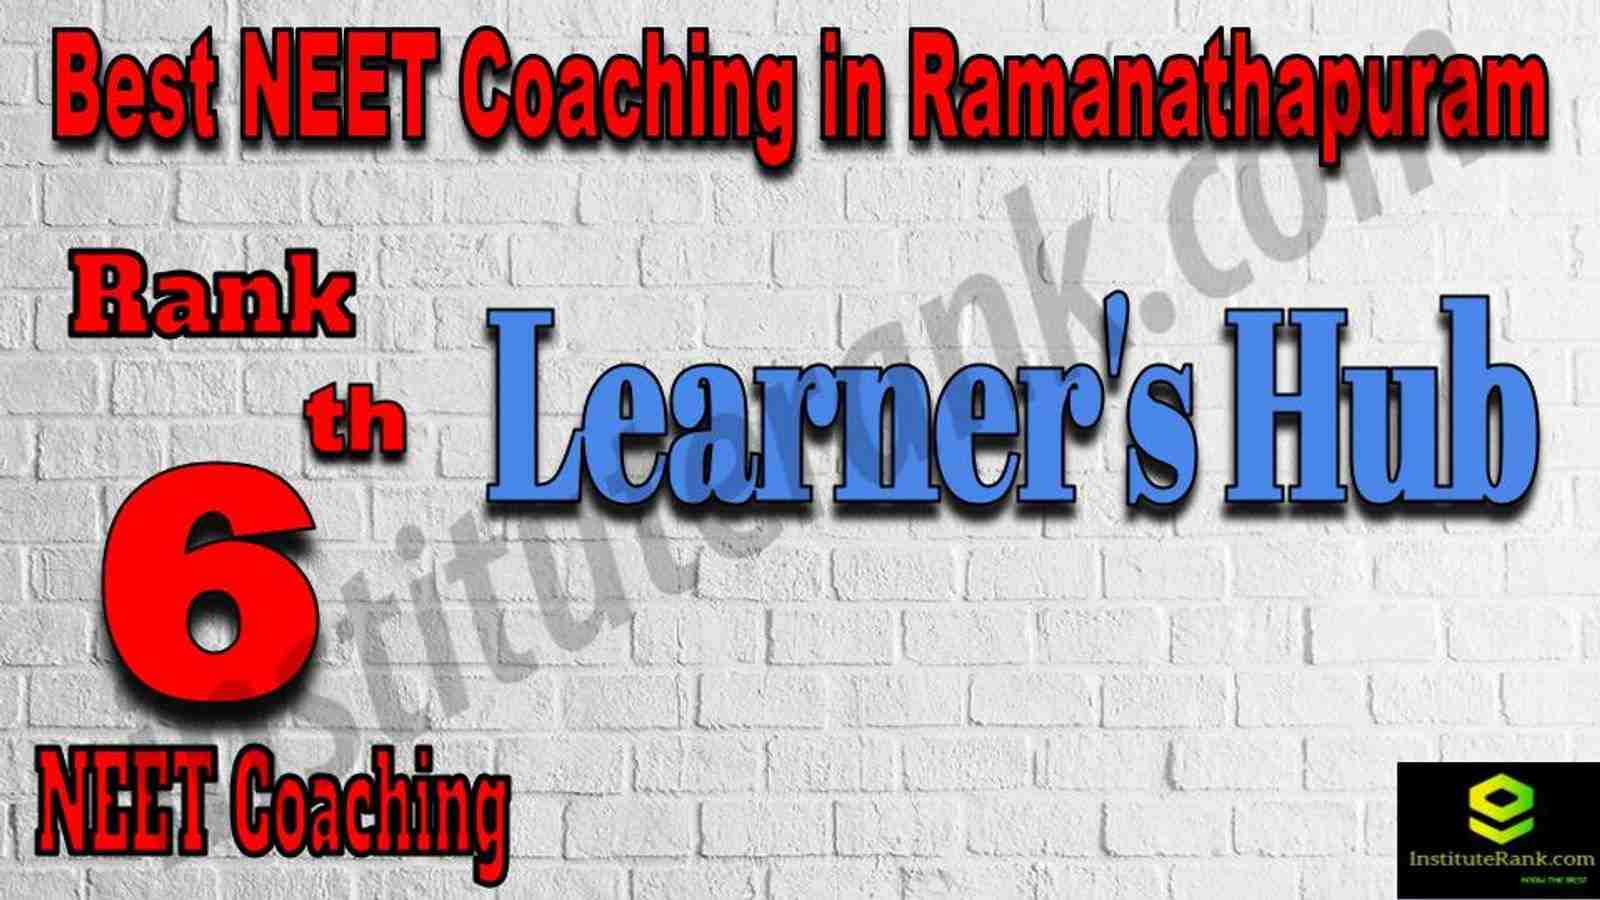 6th Best NEET Coaching in Ramanathapuram